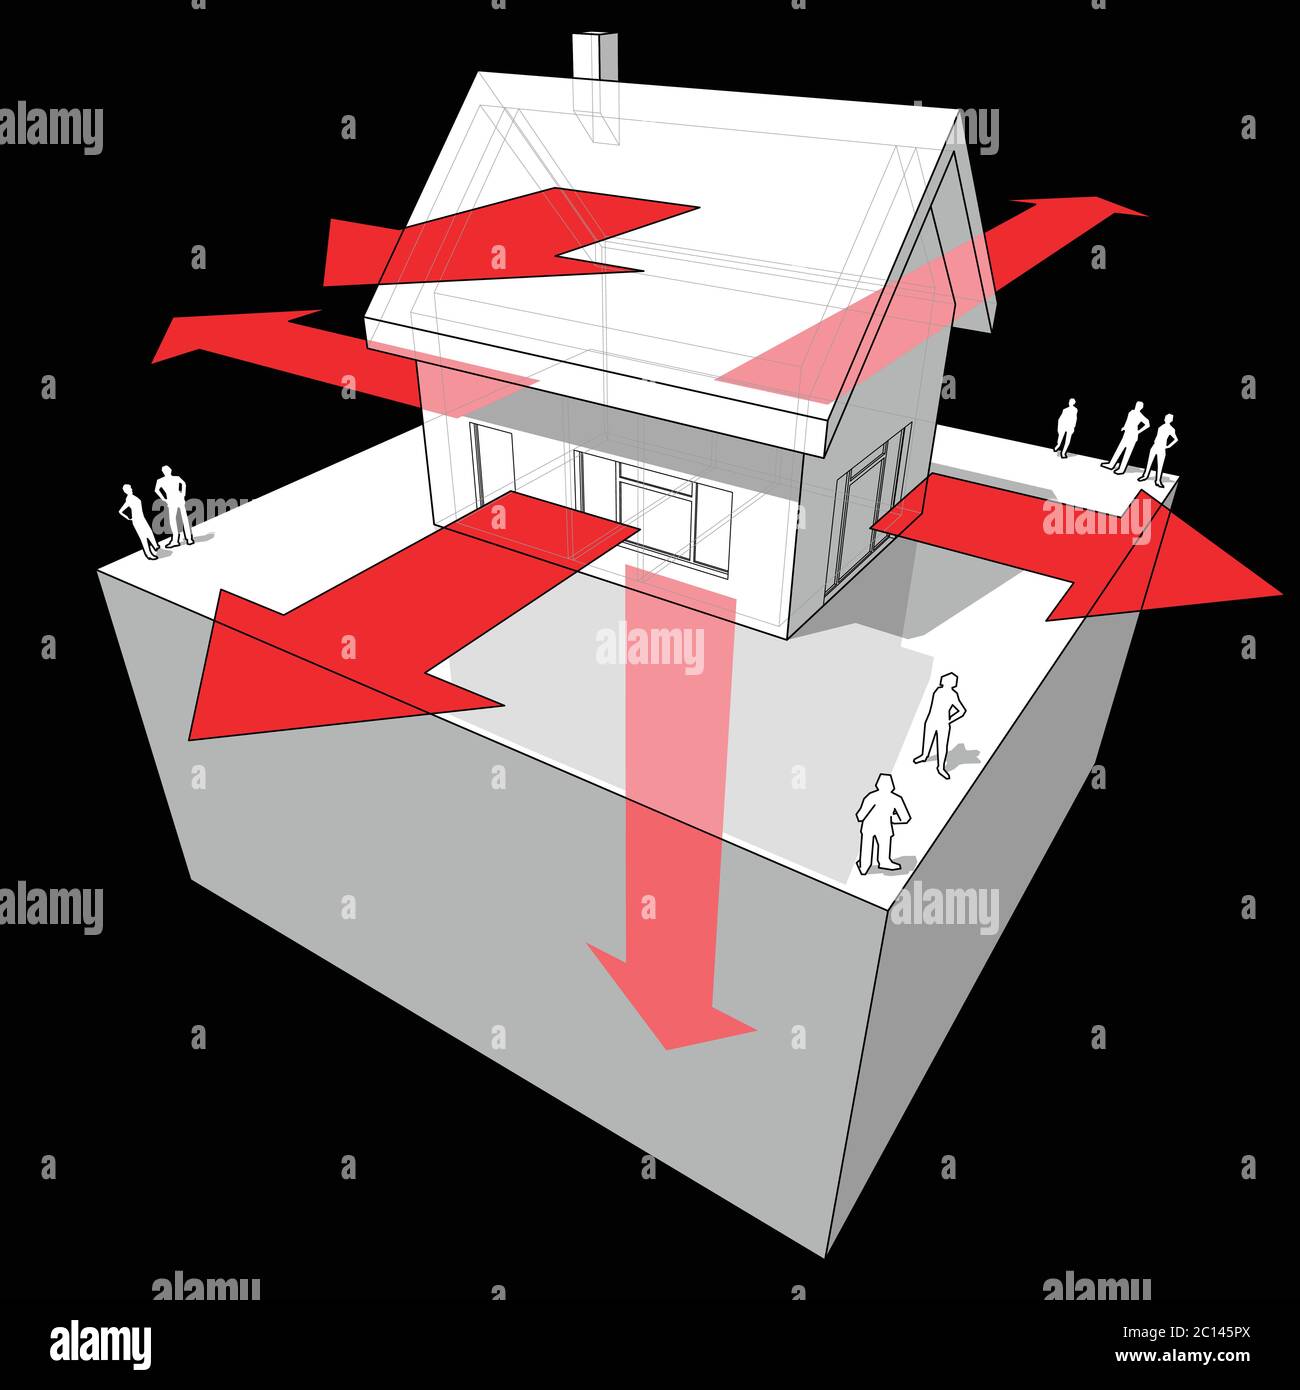 Diagramm eines Einfamilienhauses, das zeigt, wie die Wärme durch die Konstruktion verloren geht (durch Wände, Türen/Fenster, Dach, Boden) Stock Vektor